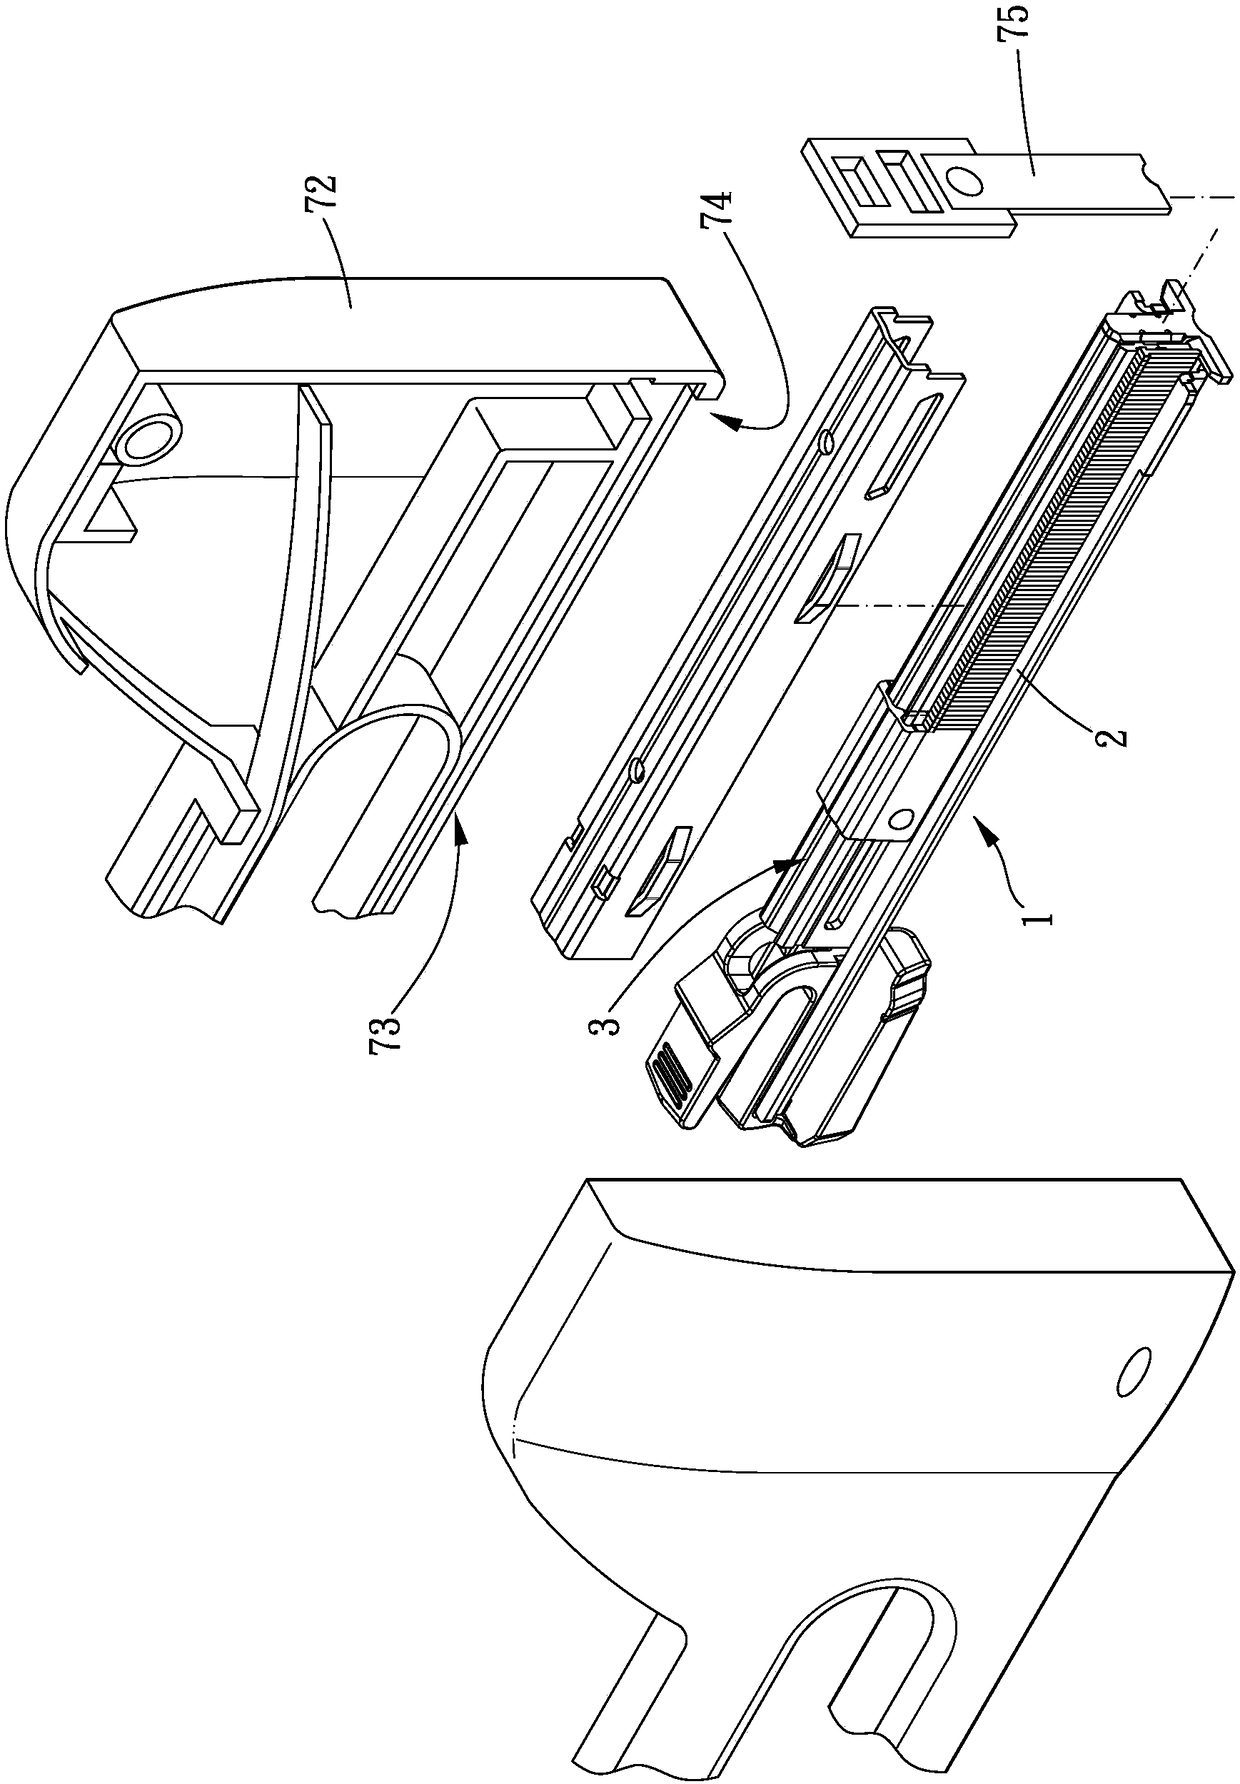 Nail box assembly and nail gun provided with same